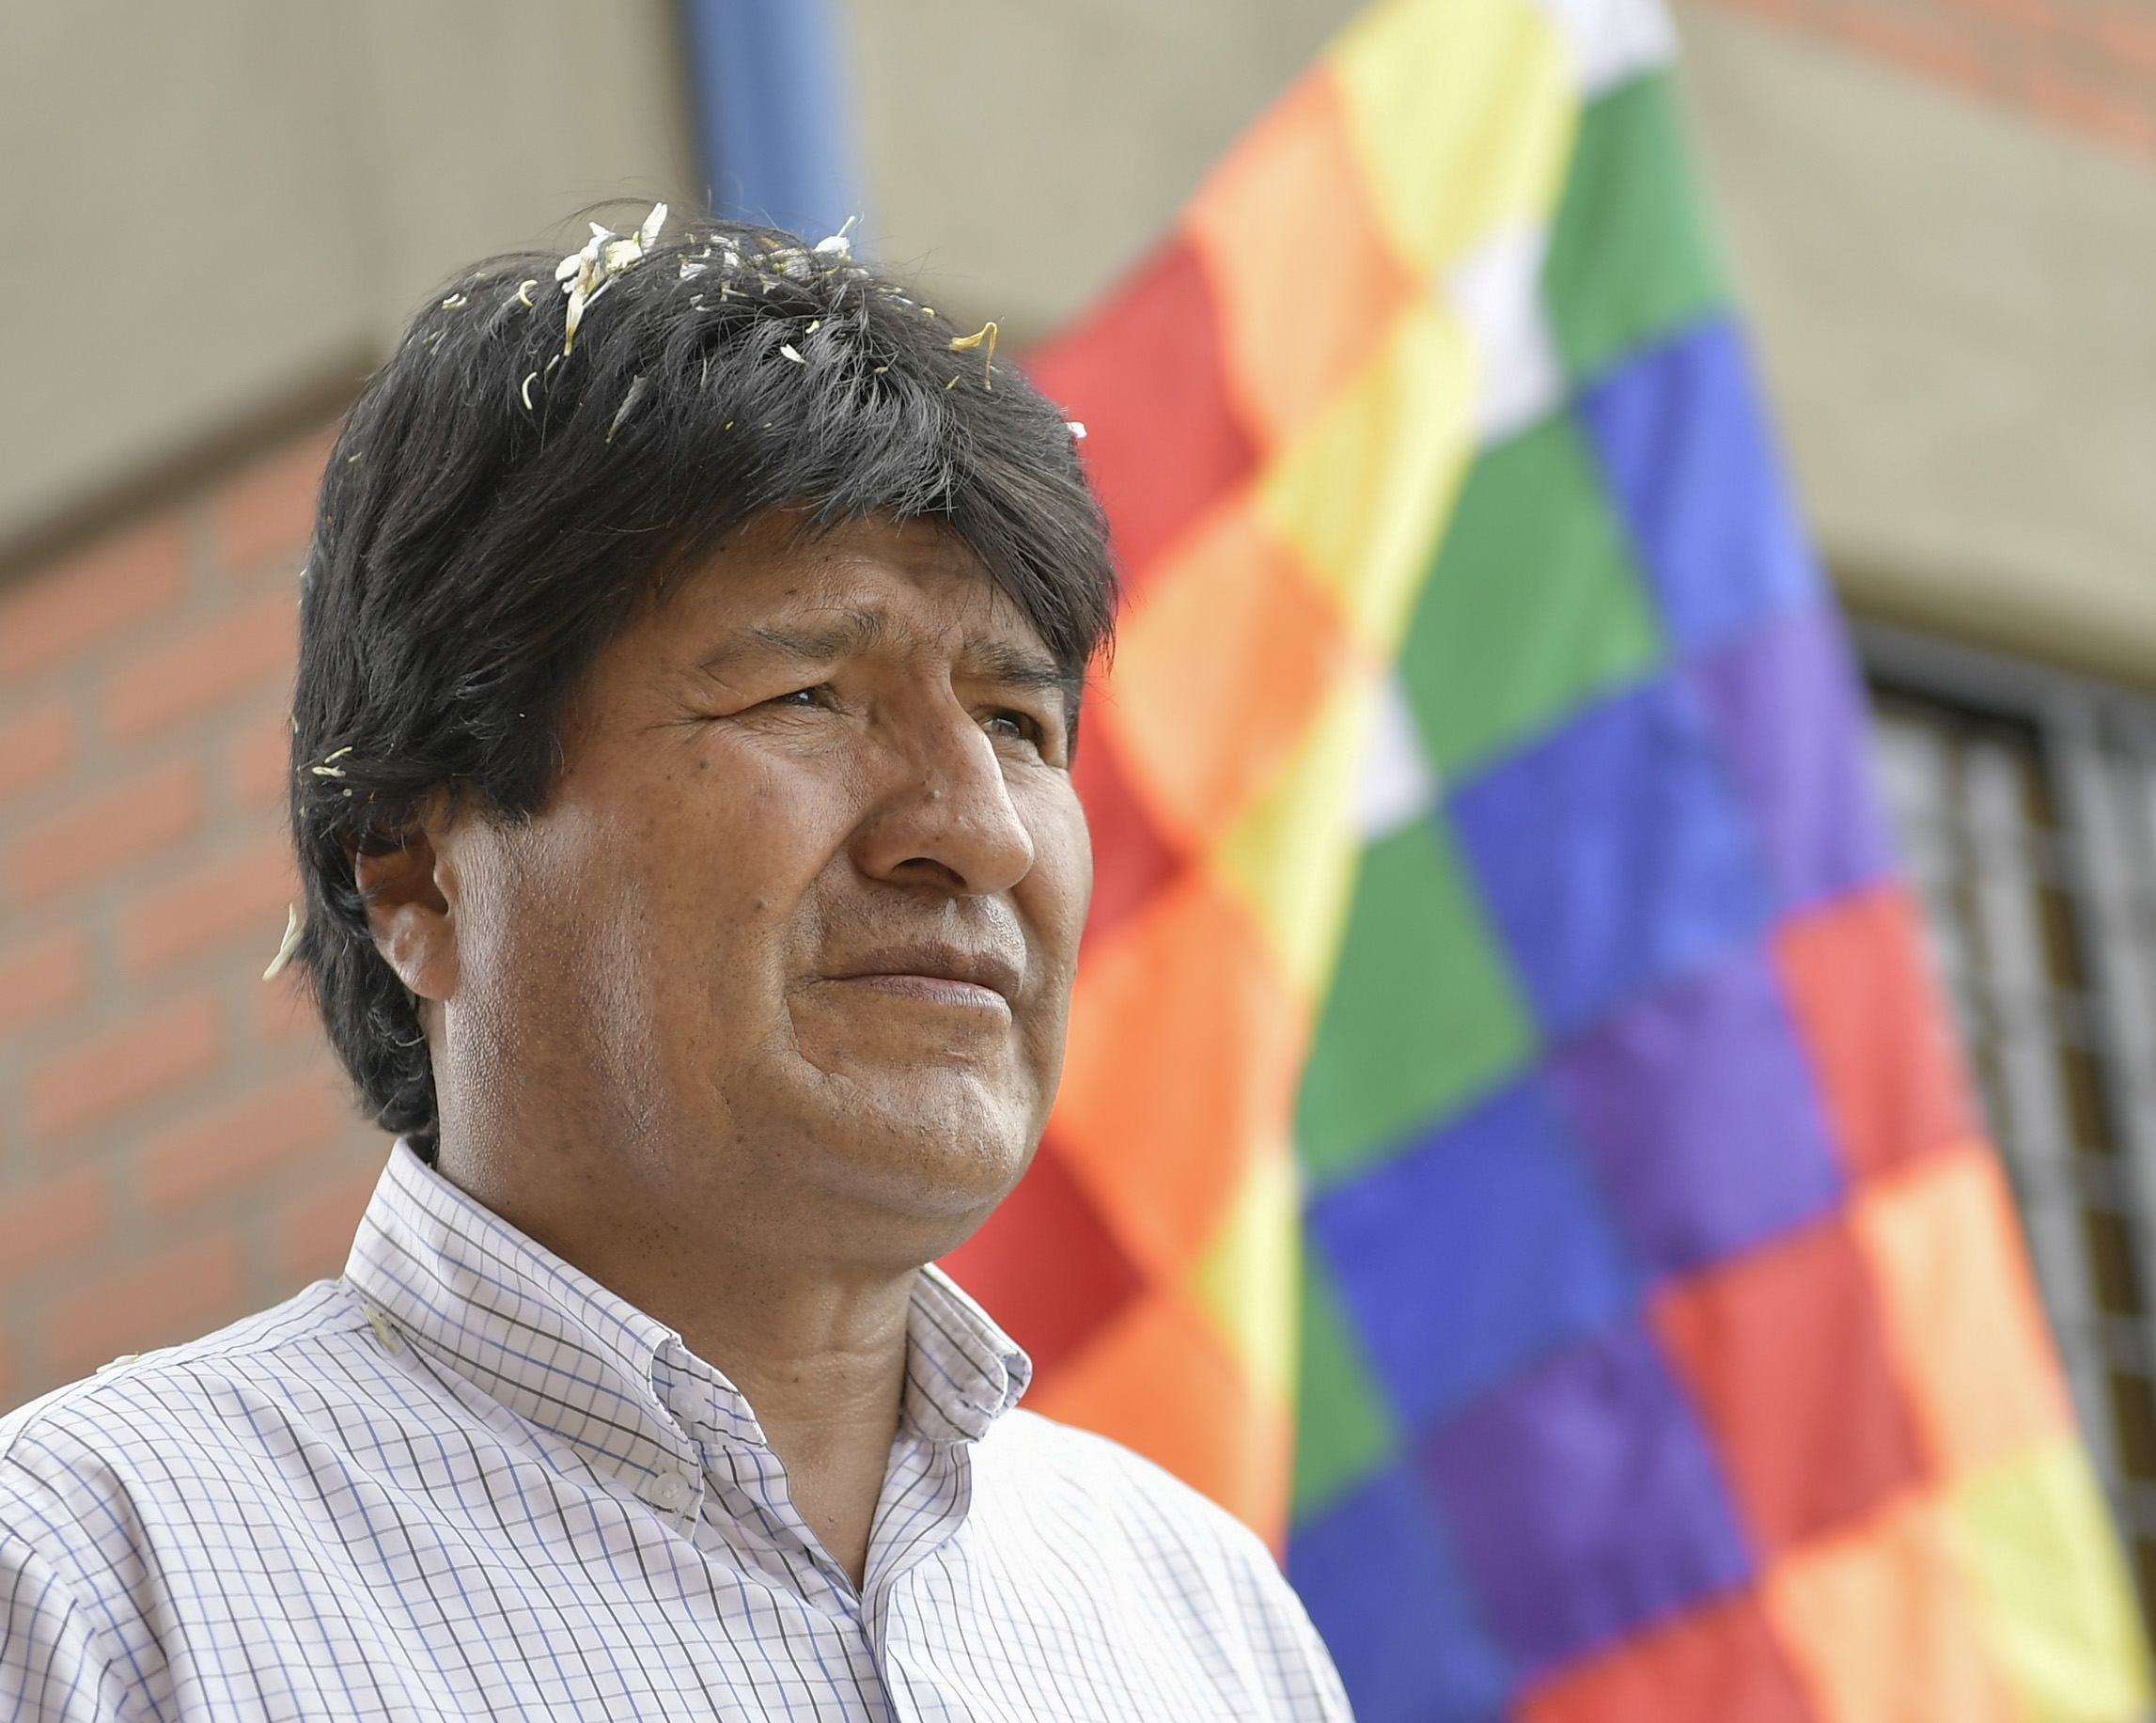 El presidente boliviano Evo Morales afirmó en su cuenta twitter desde La Habana, Cuba, que no debe haber ninguna preocupación tras la cirugía menor.